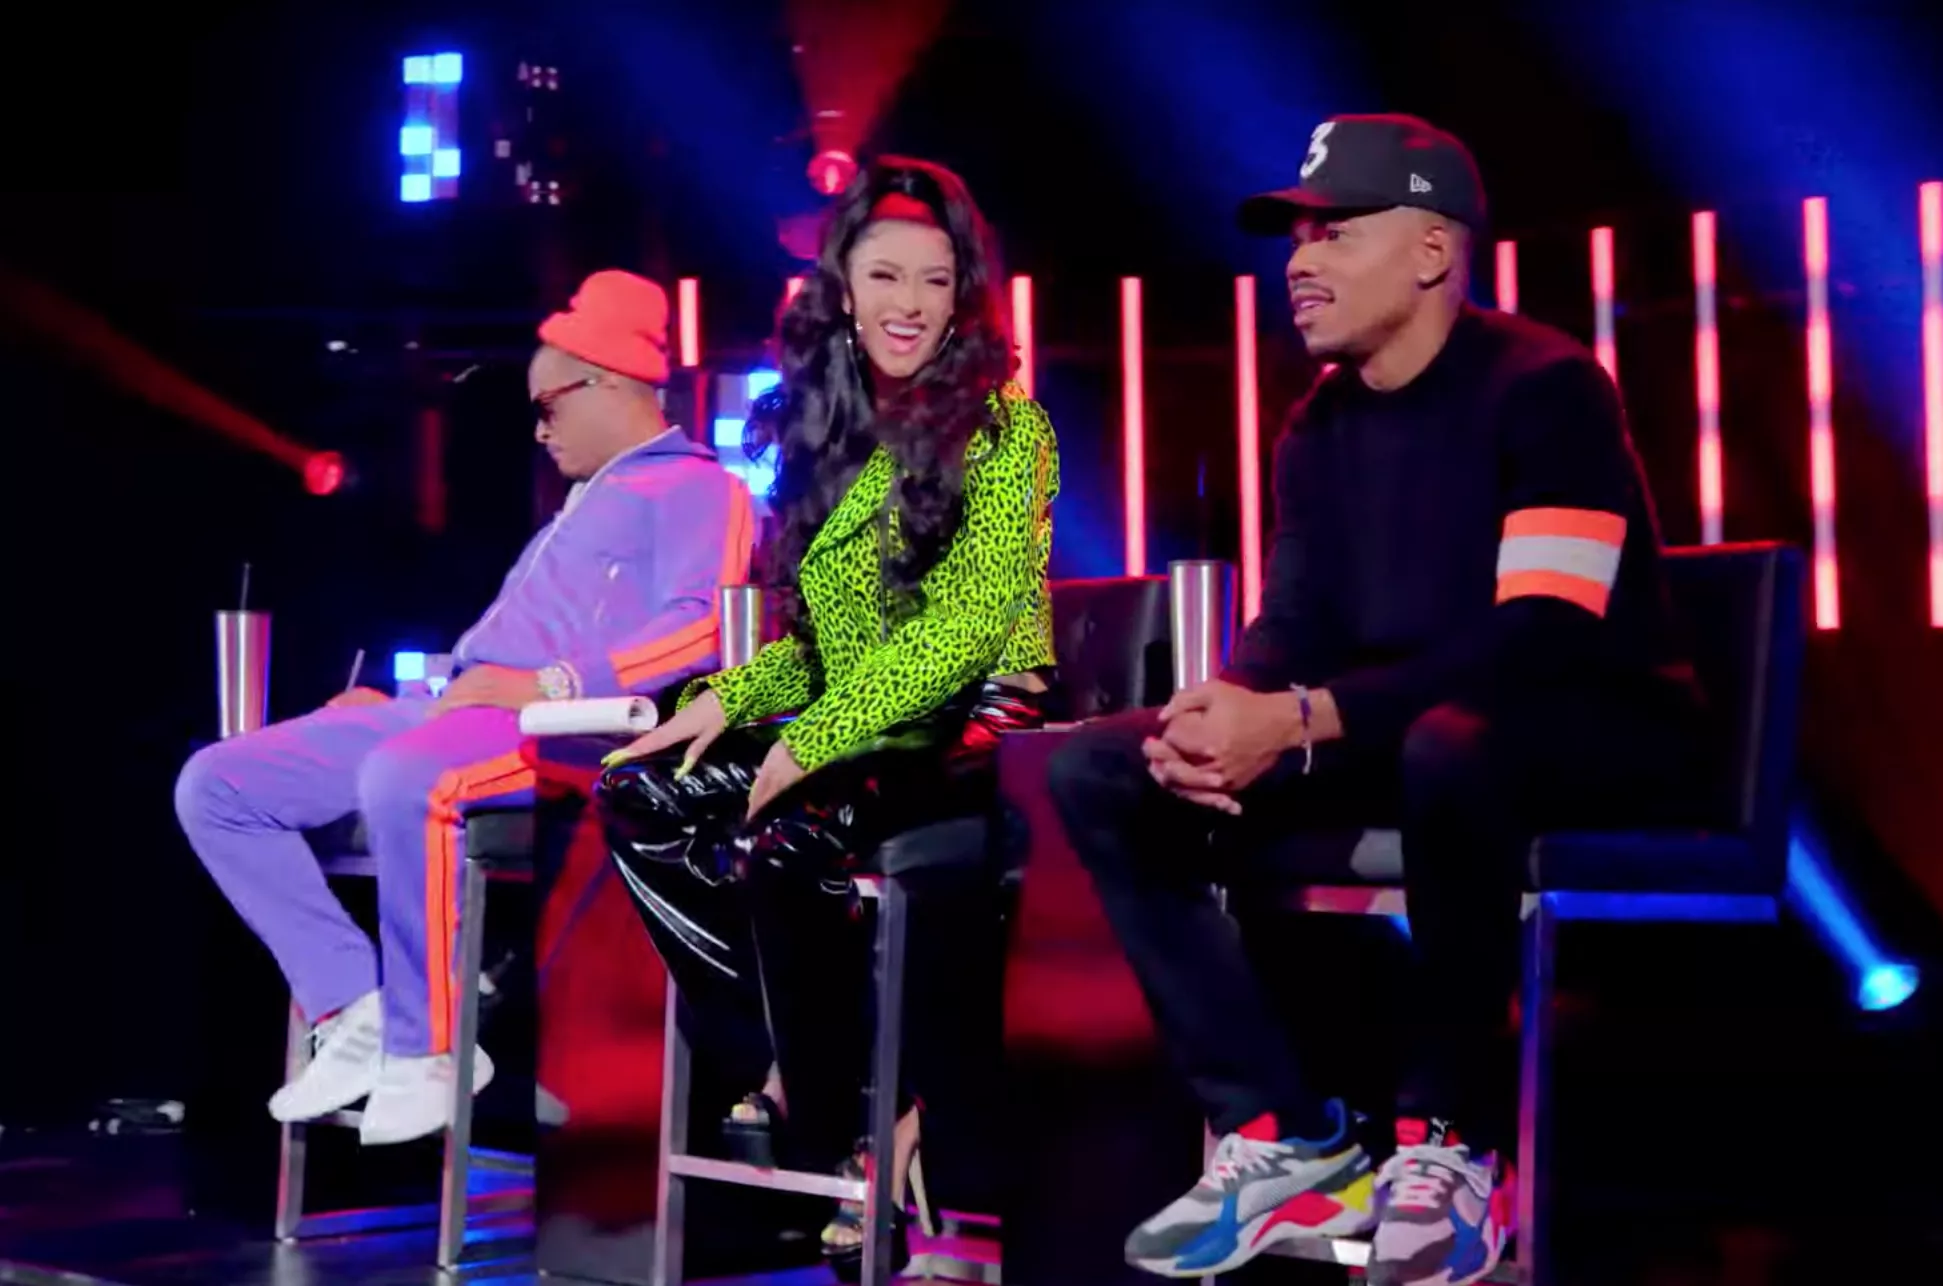 Netflix satser på talentshow – Cardi B, Chance the Rapper og T.I. er dommere